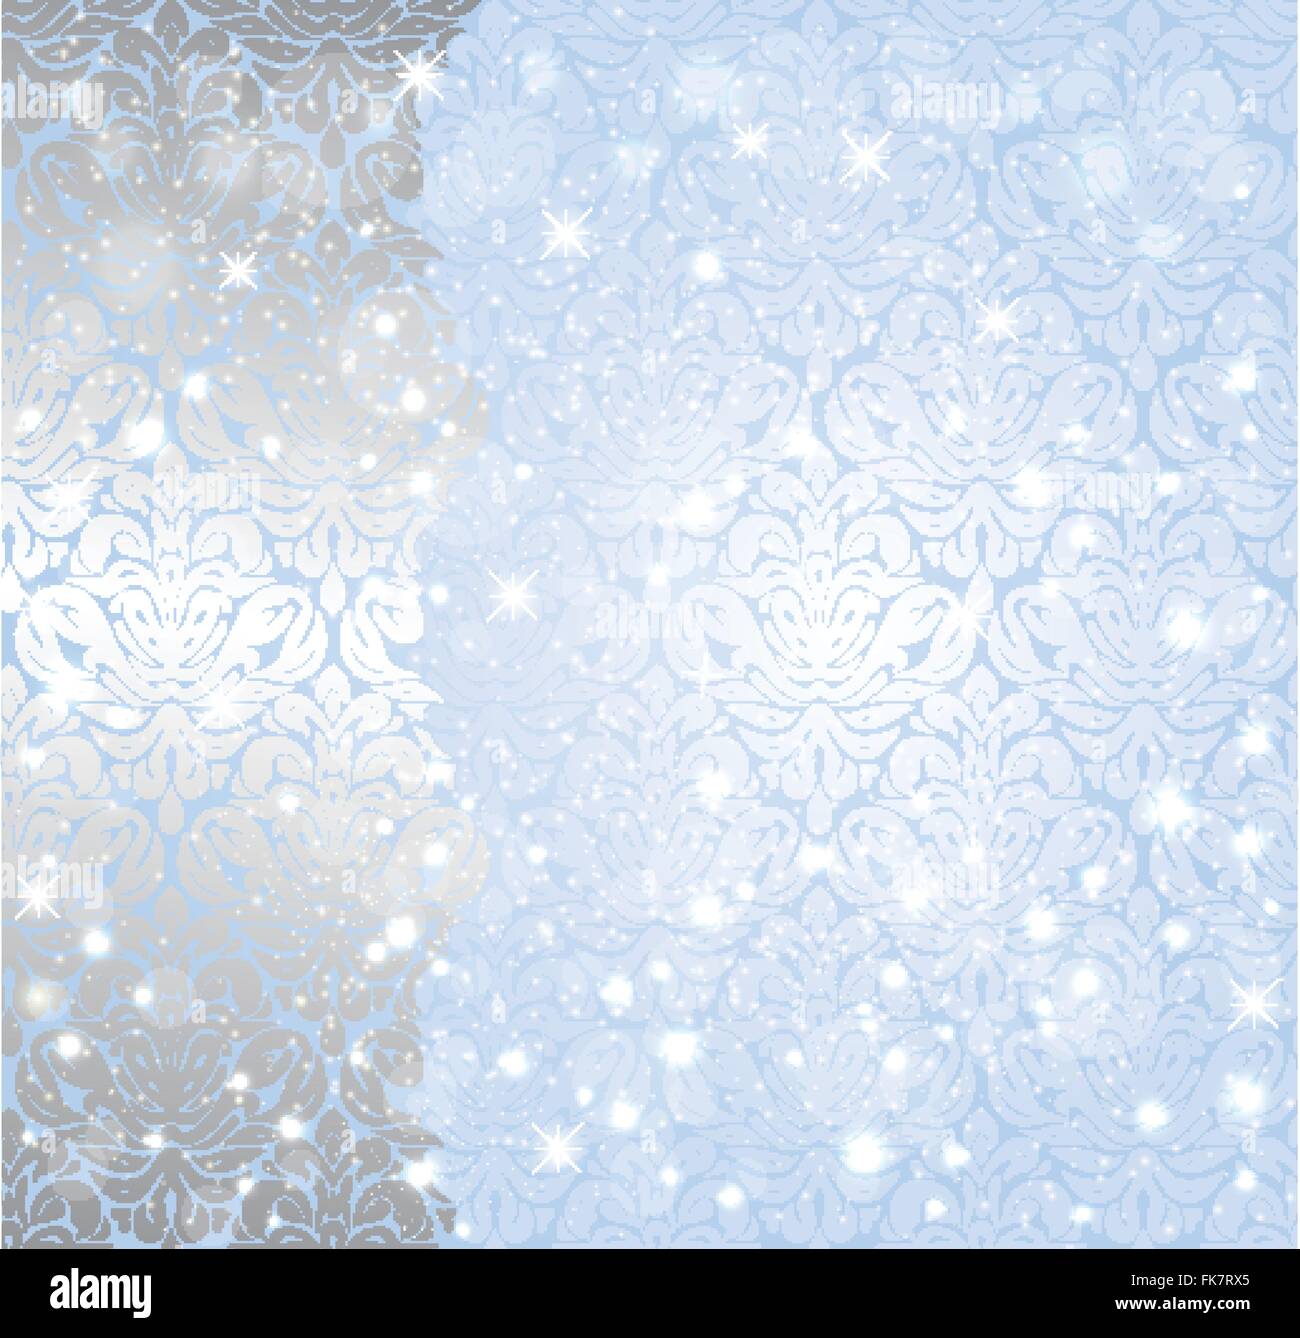 Glänzende blaue Weihnachten Winter Schneeflocke Vintage Einladung Hintergrunddesign Stock Vektor